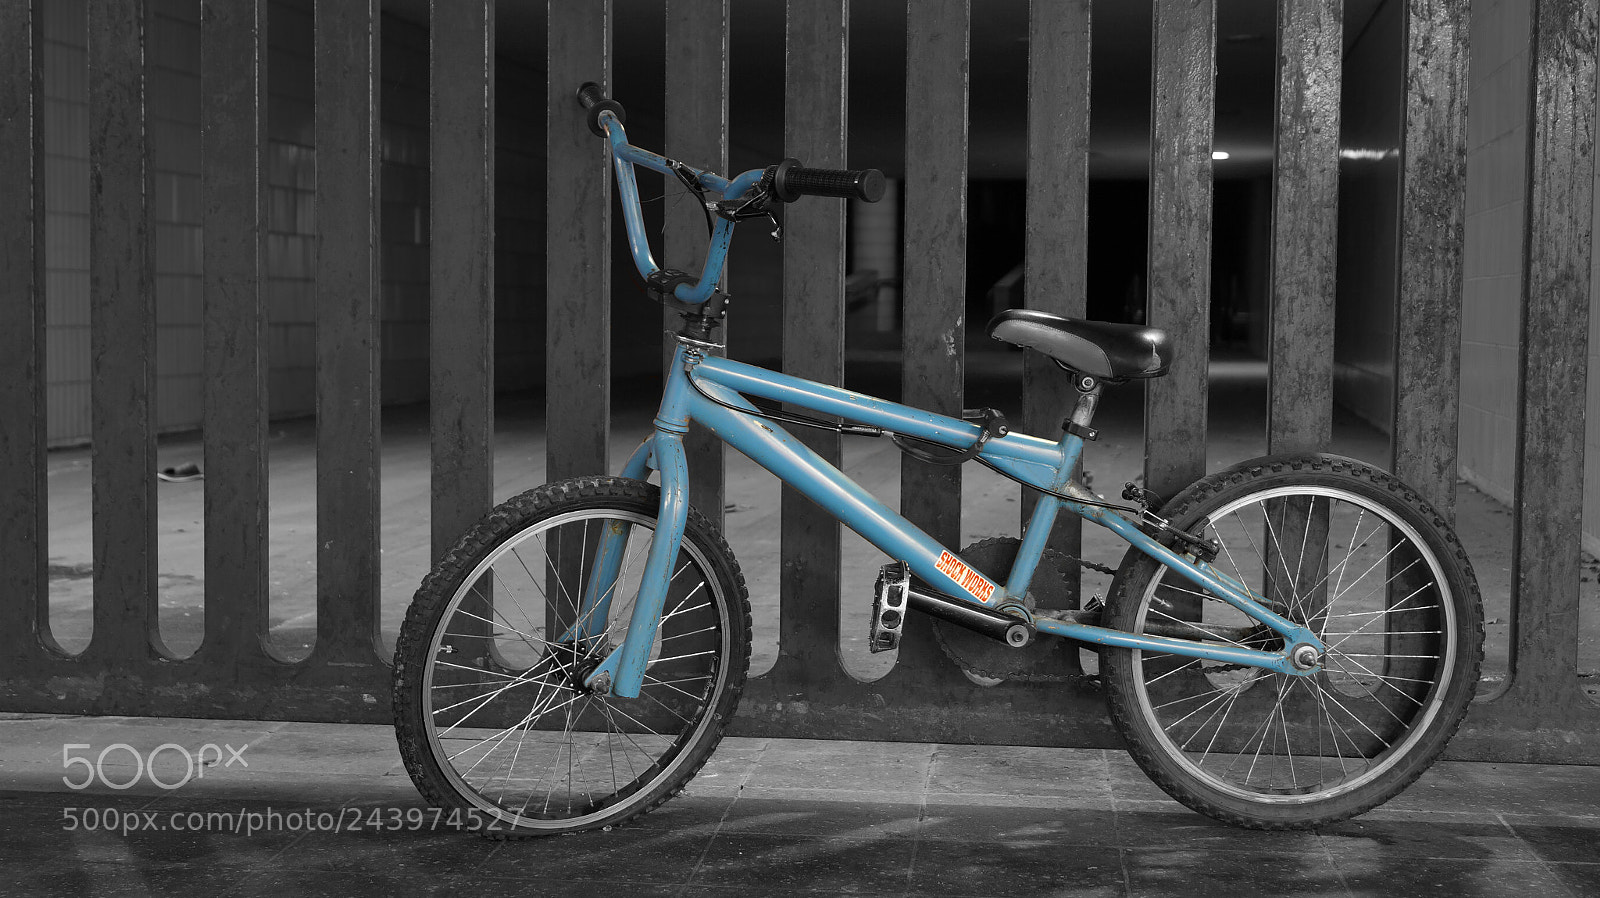 Sony SLT-A58 sample photo. Blue bike photography